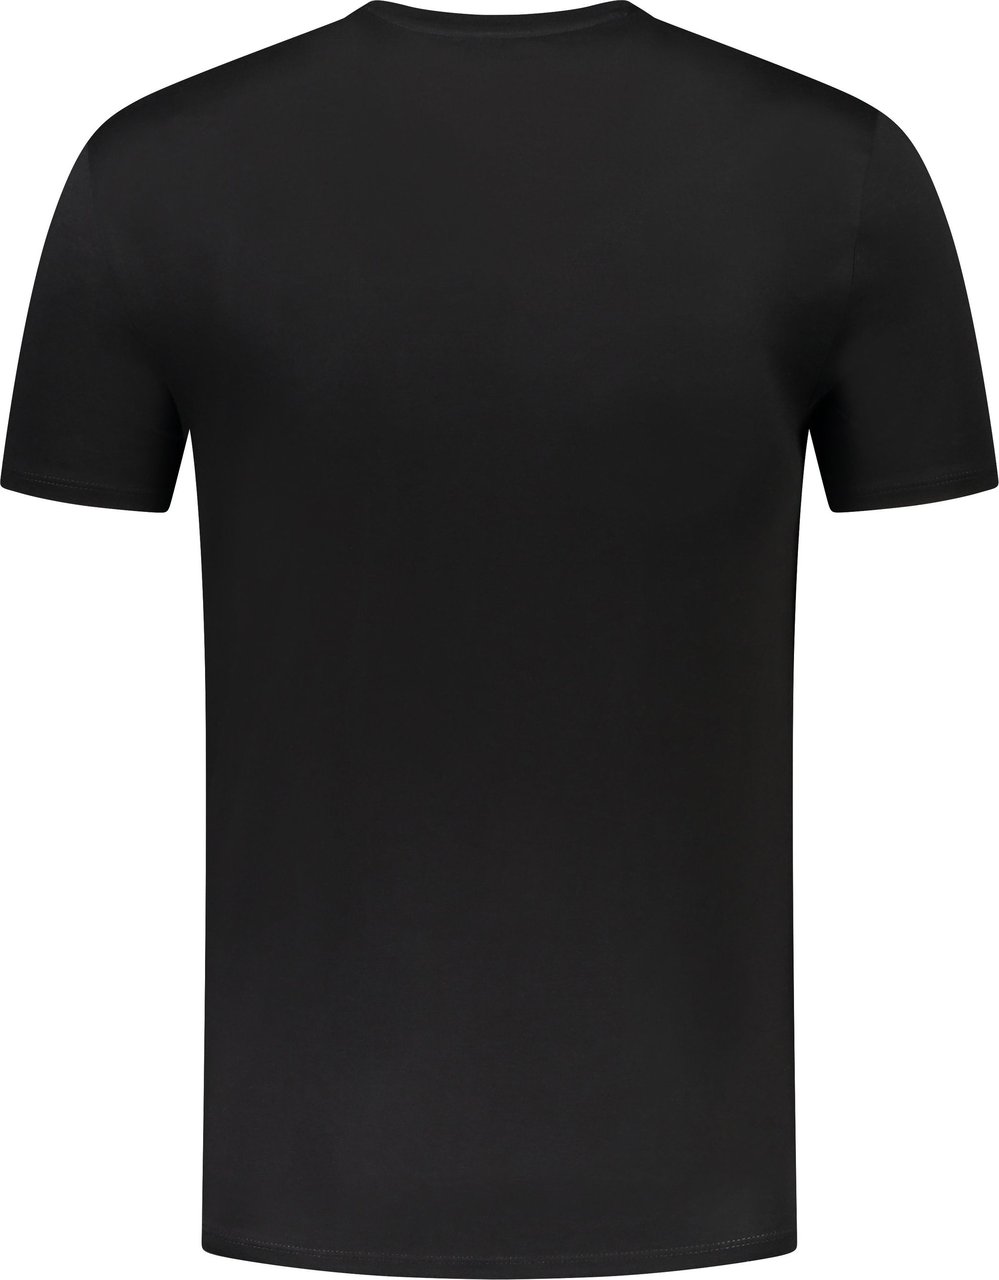 Lacoste T-shirt Zwart Zwart